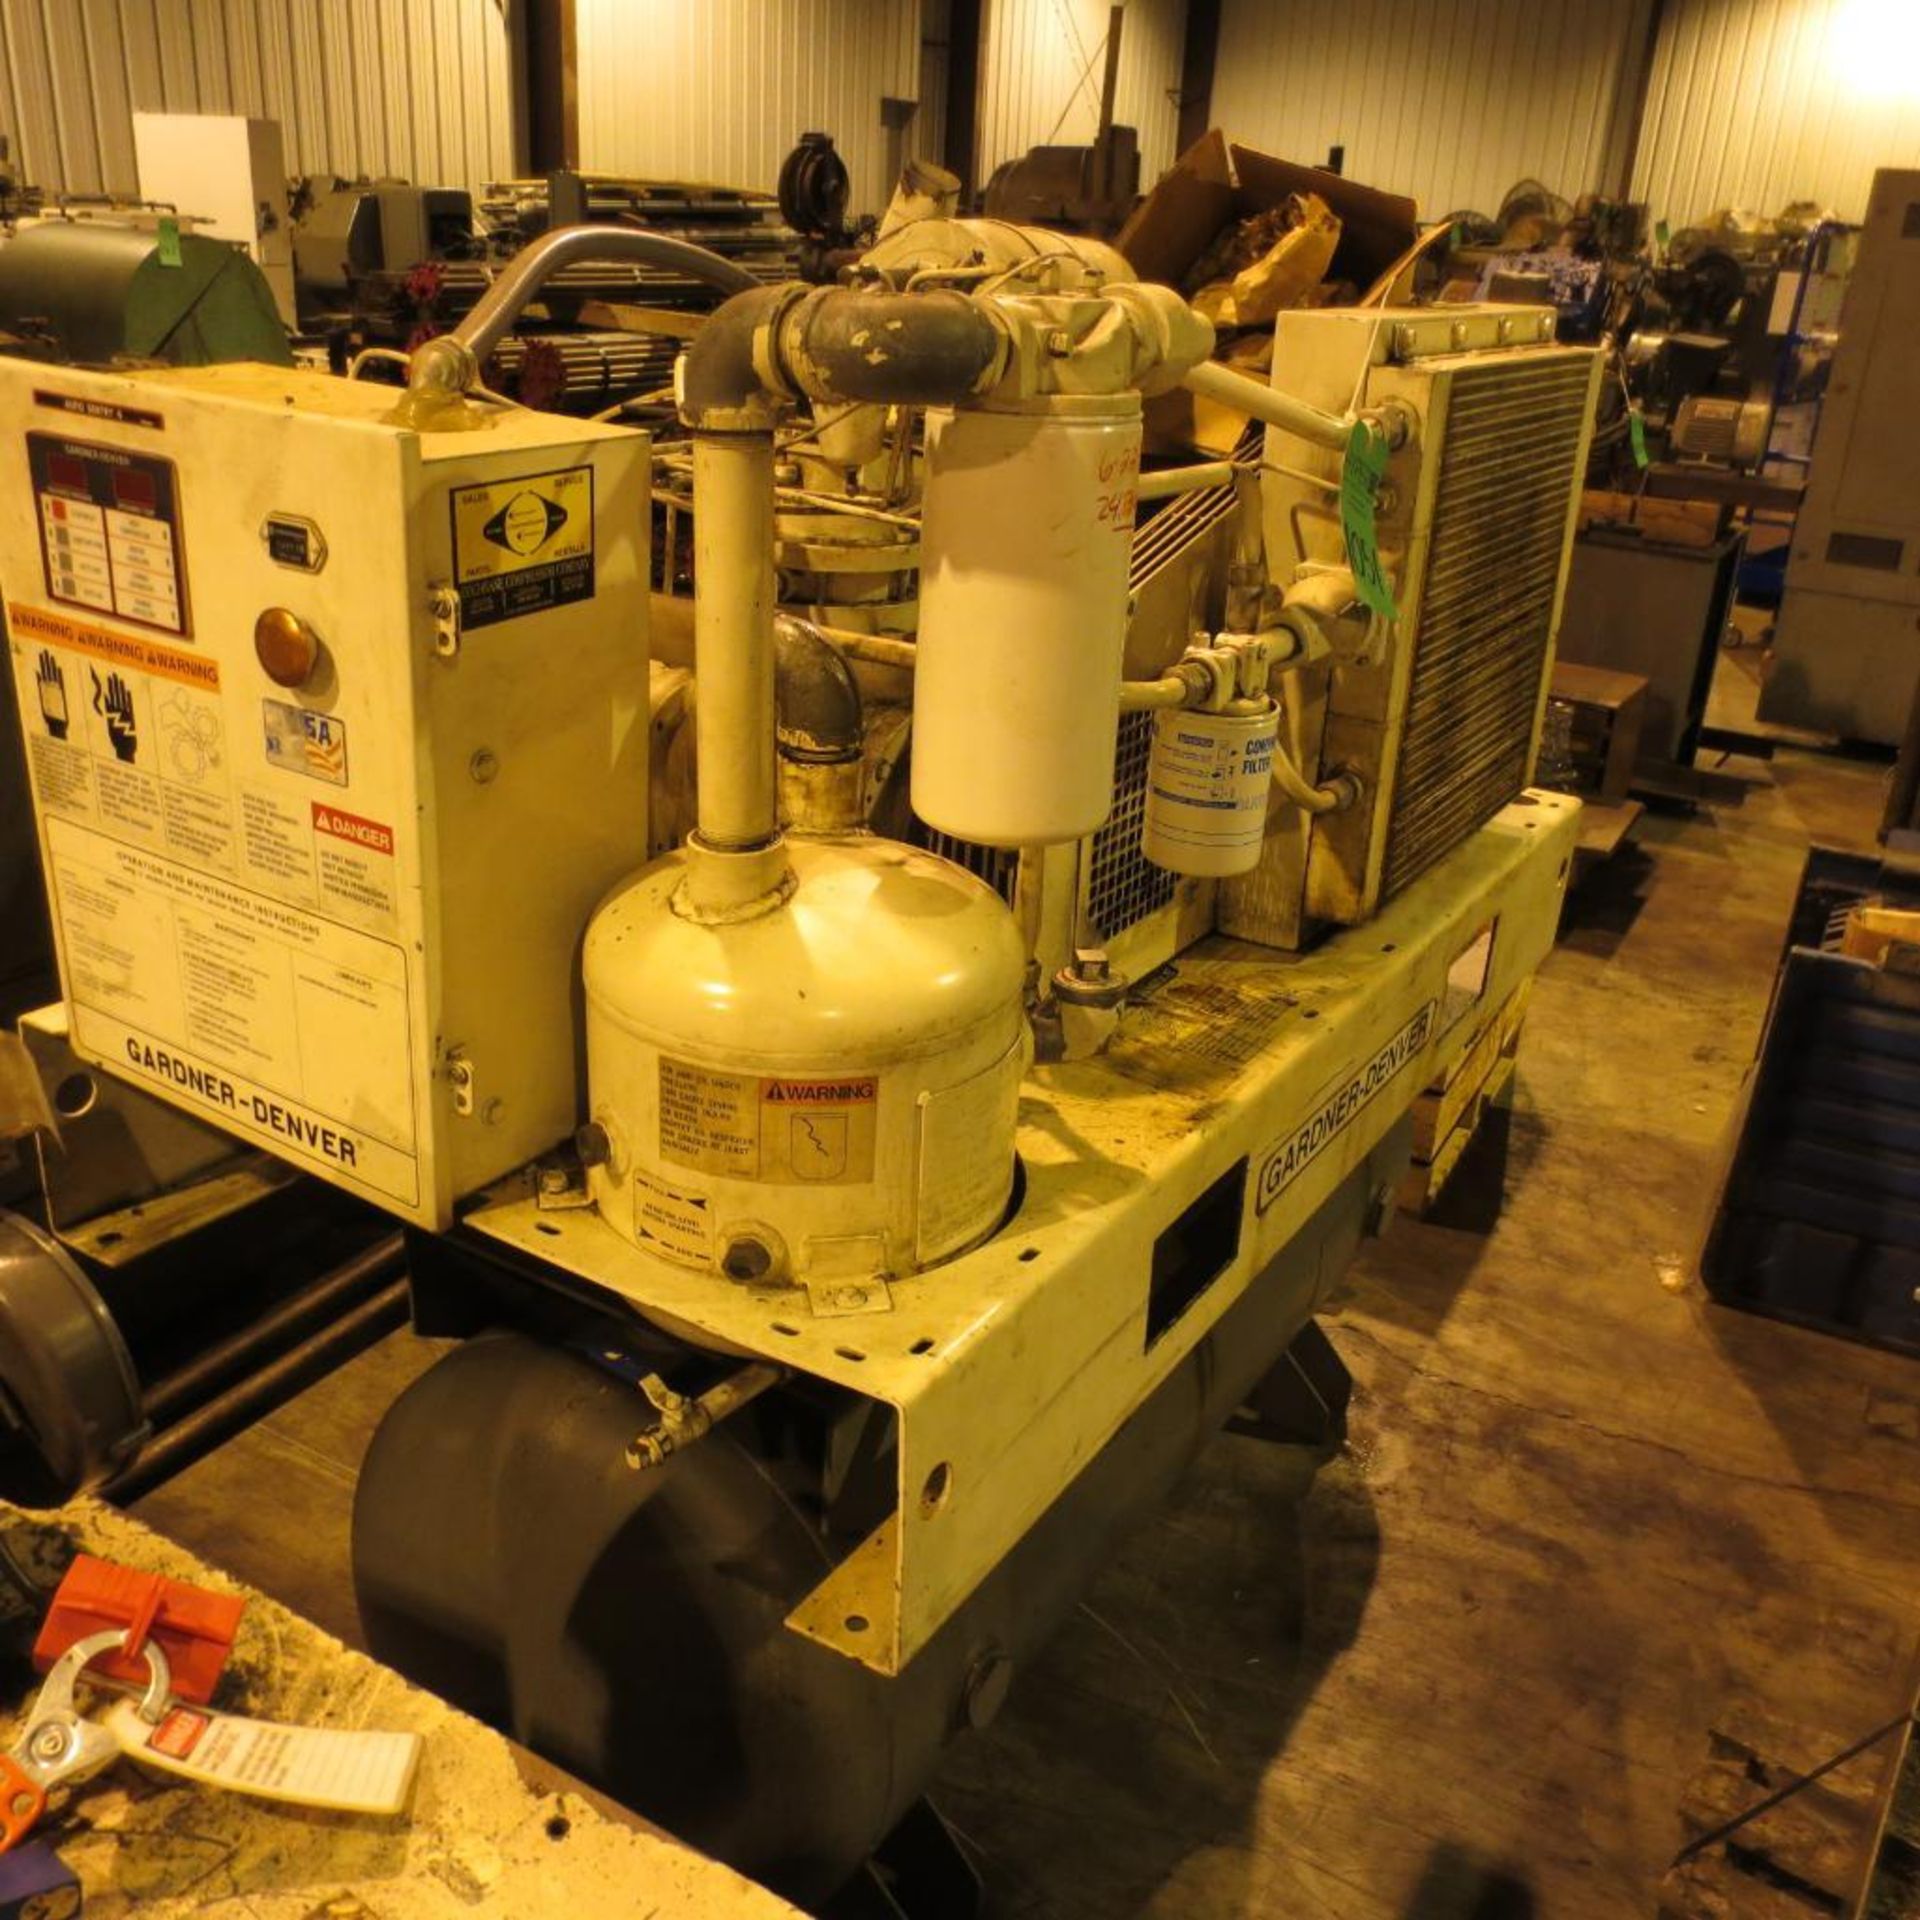 Gander Denver Air Compressor, Model EBEQED, 100PSIG, 230V,1896RPM, 3PH, 24569HR, 20HP *RIGGING $150* - Image 3 of 5